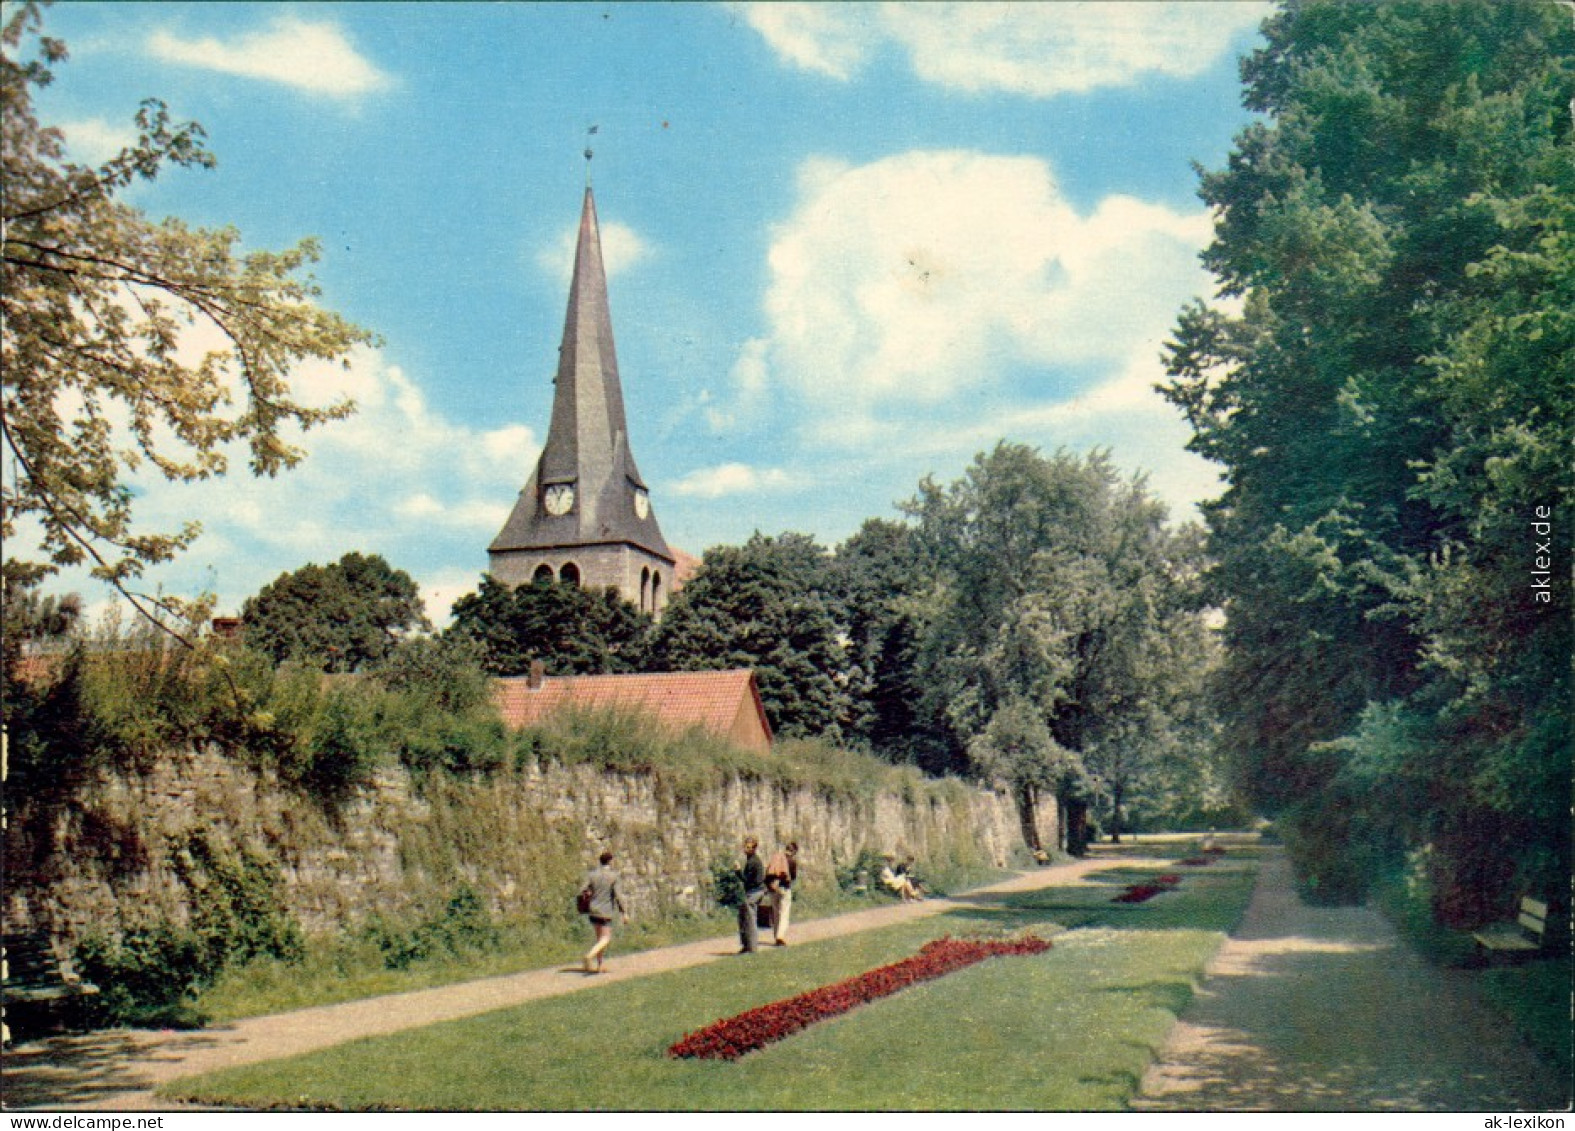 Ansichtskarte Northeim Stadtmauer 1970 - Northeim